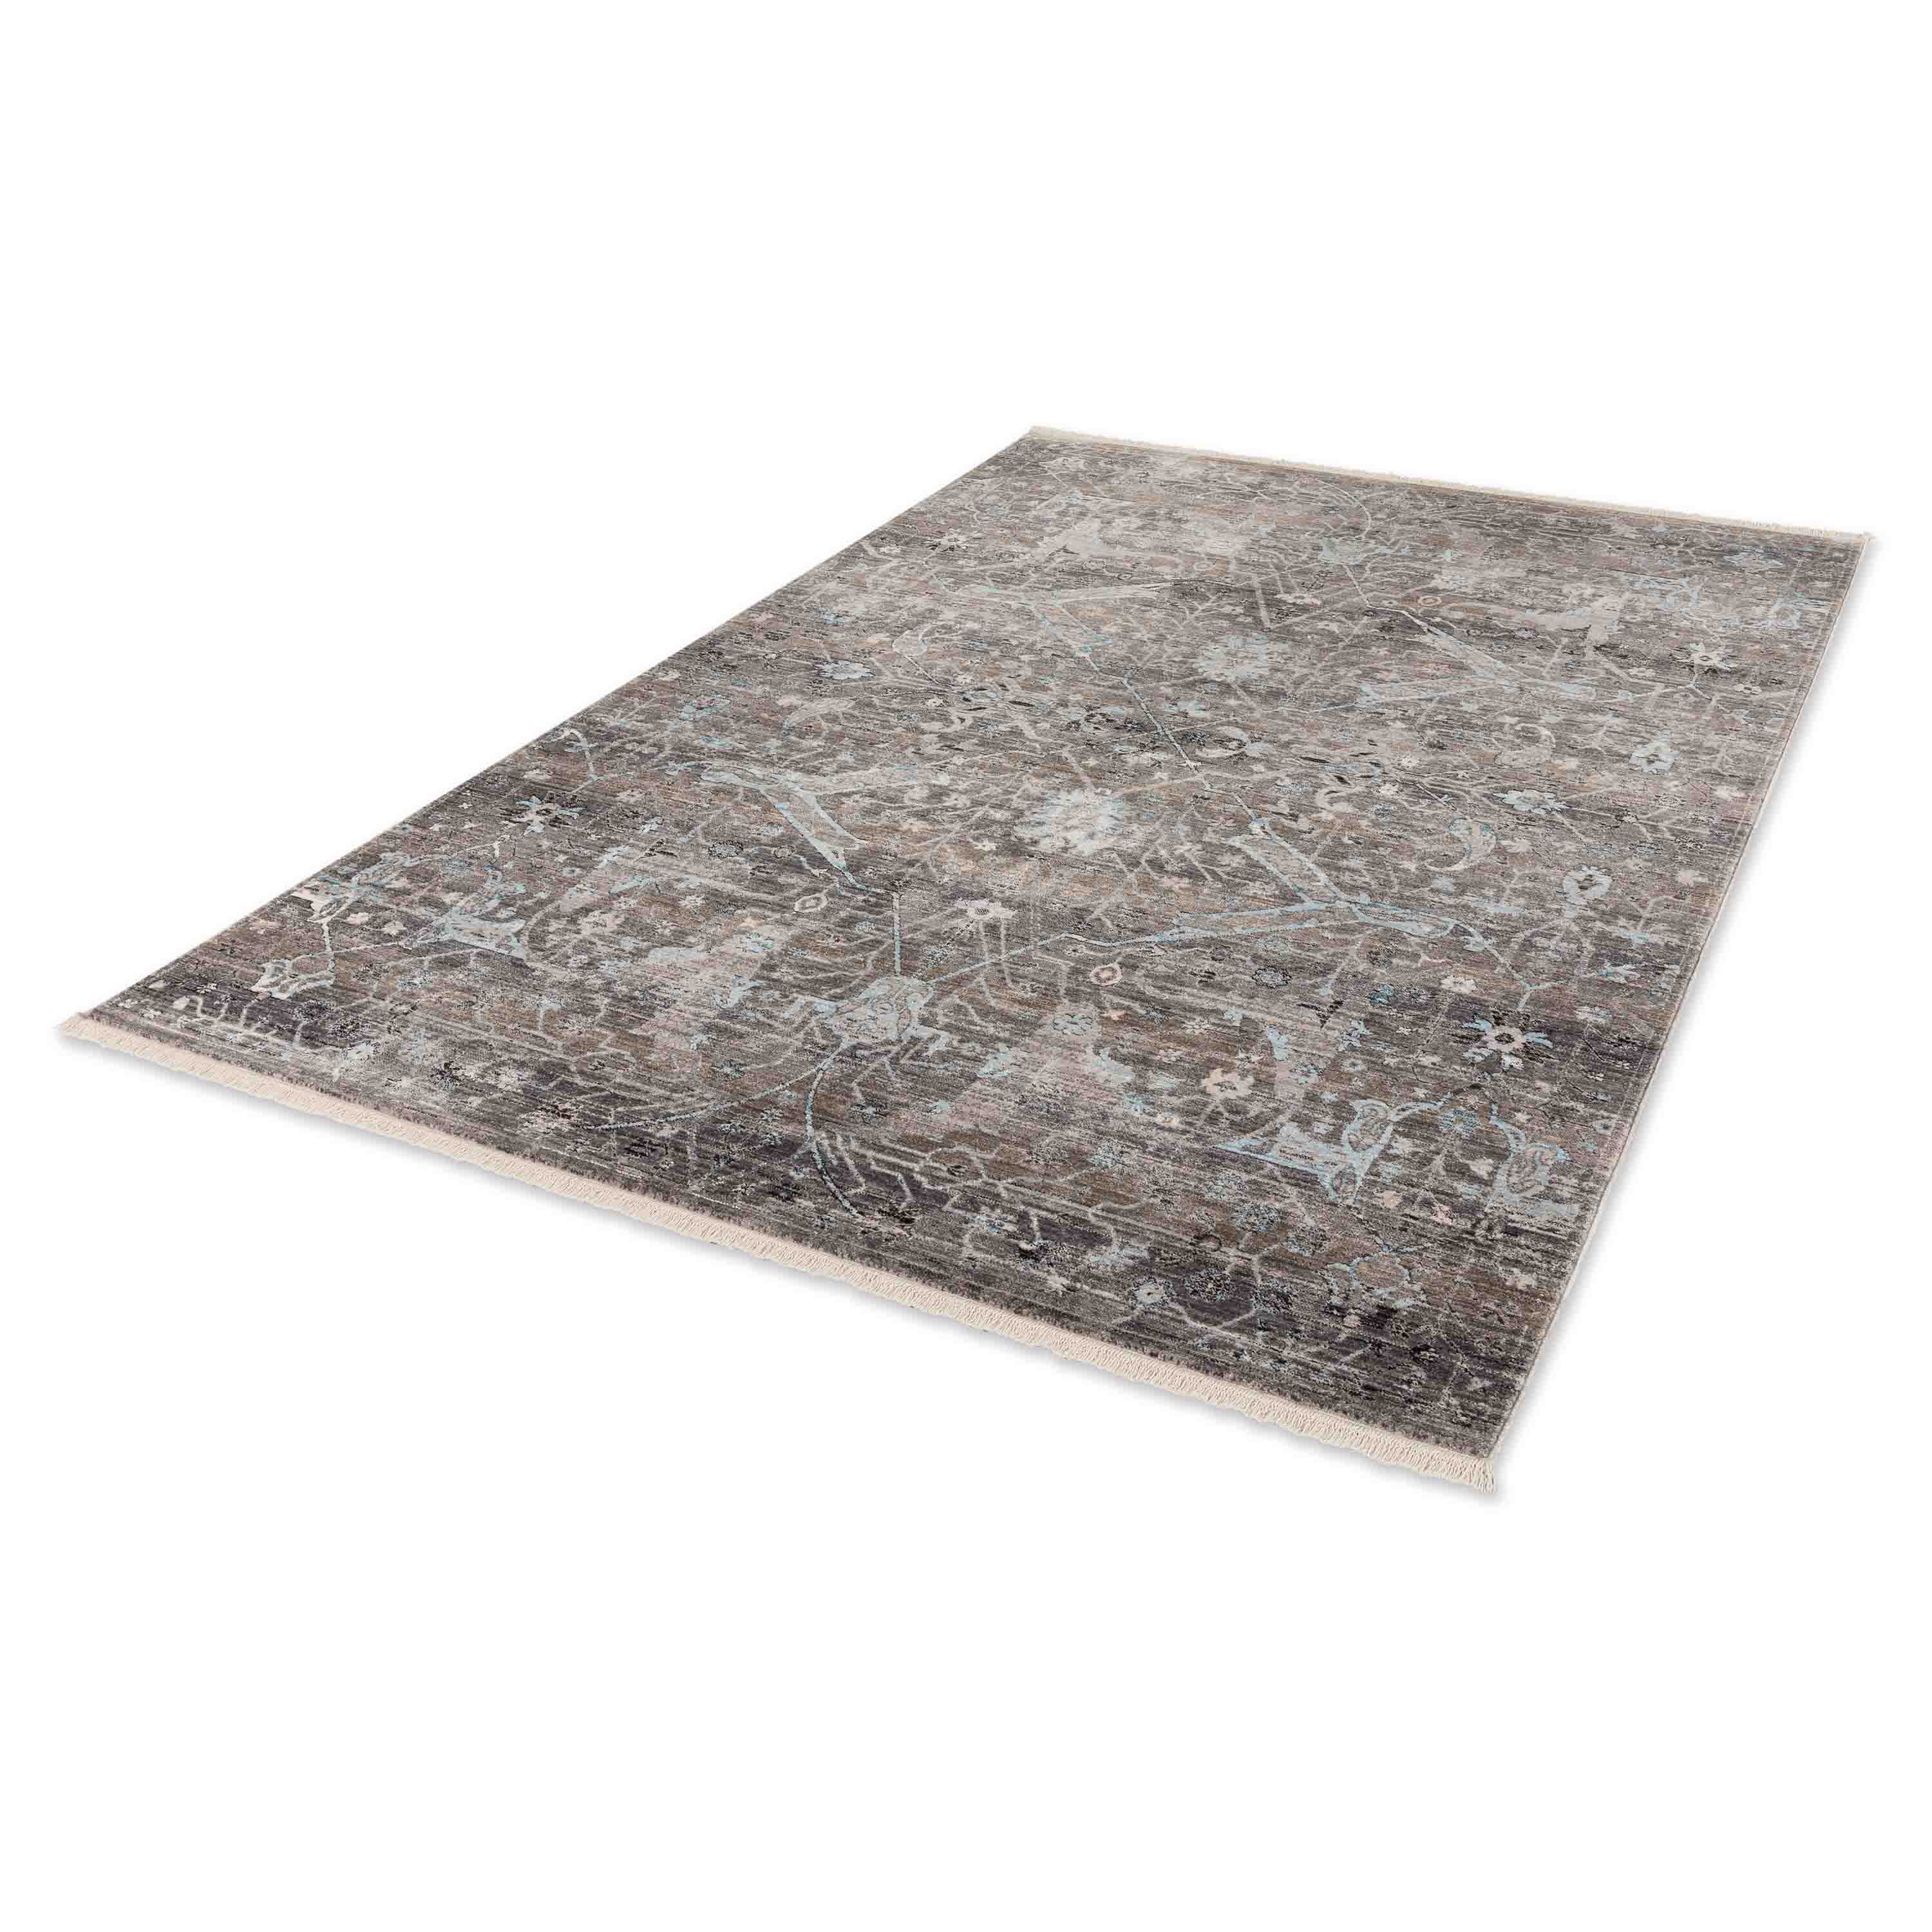 Schöner Wohnen Kollektion Teppich Mystik 133x185 cm Grau